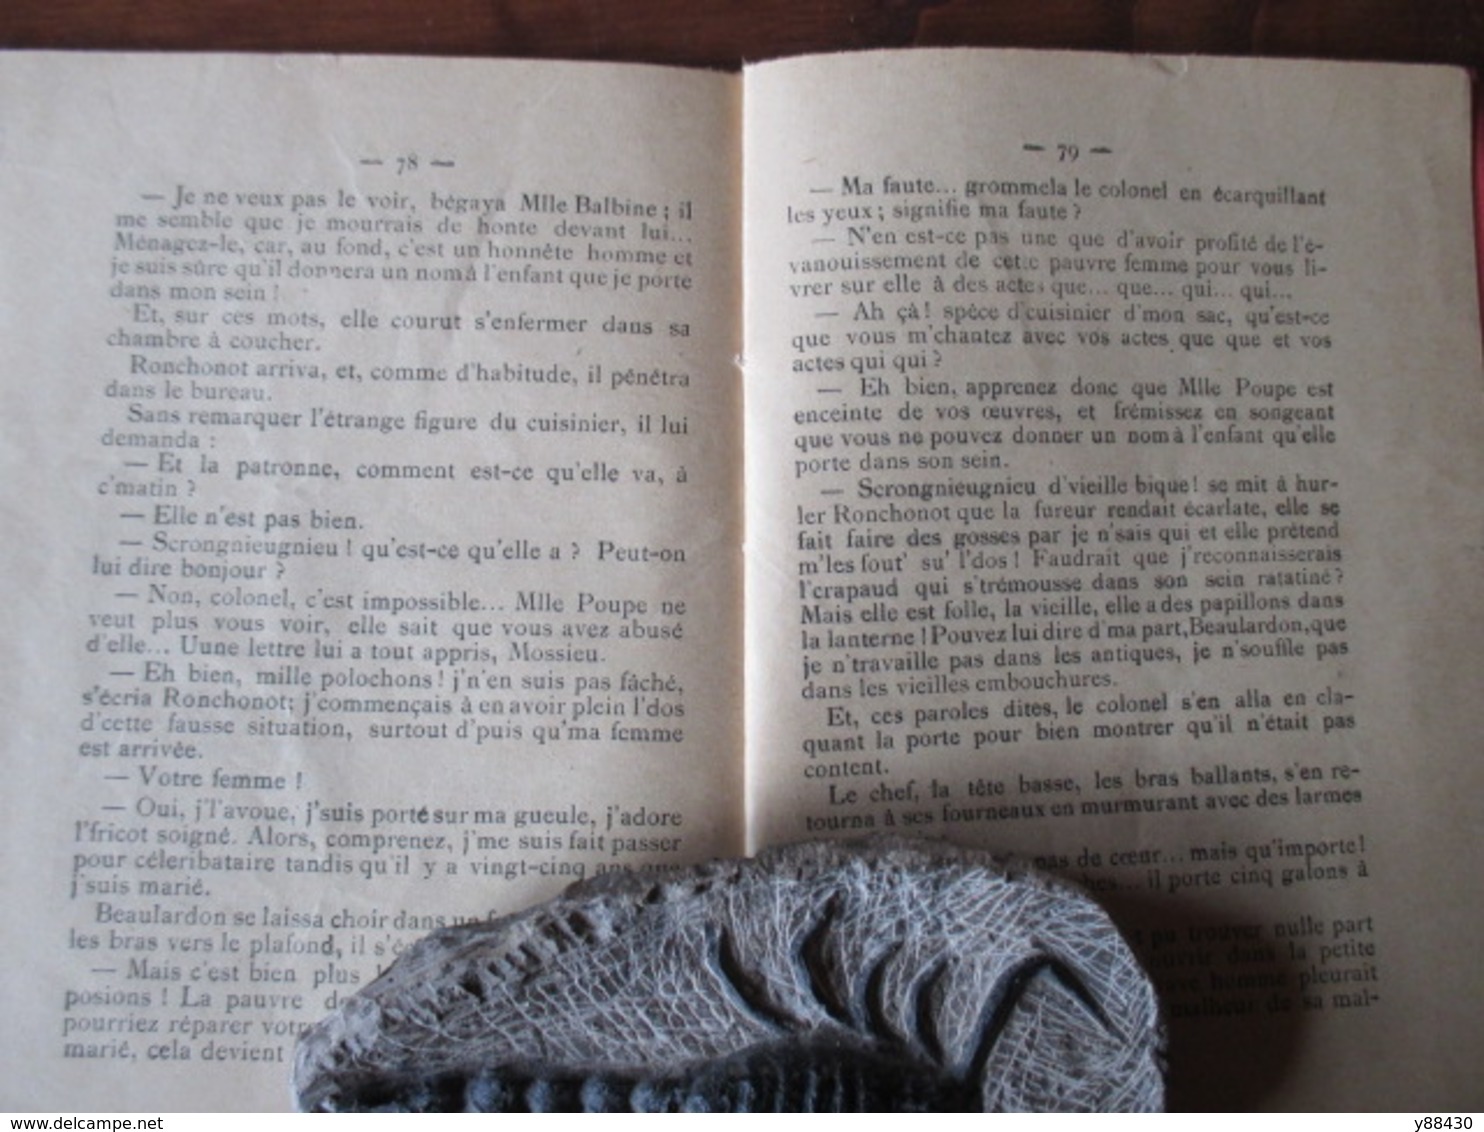 Almanach du COLONEL RONCHONOT pour 1903  - 34 pages - Livret très original et rare - 12 photos